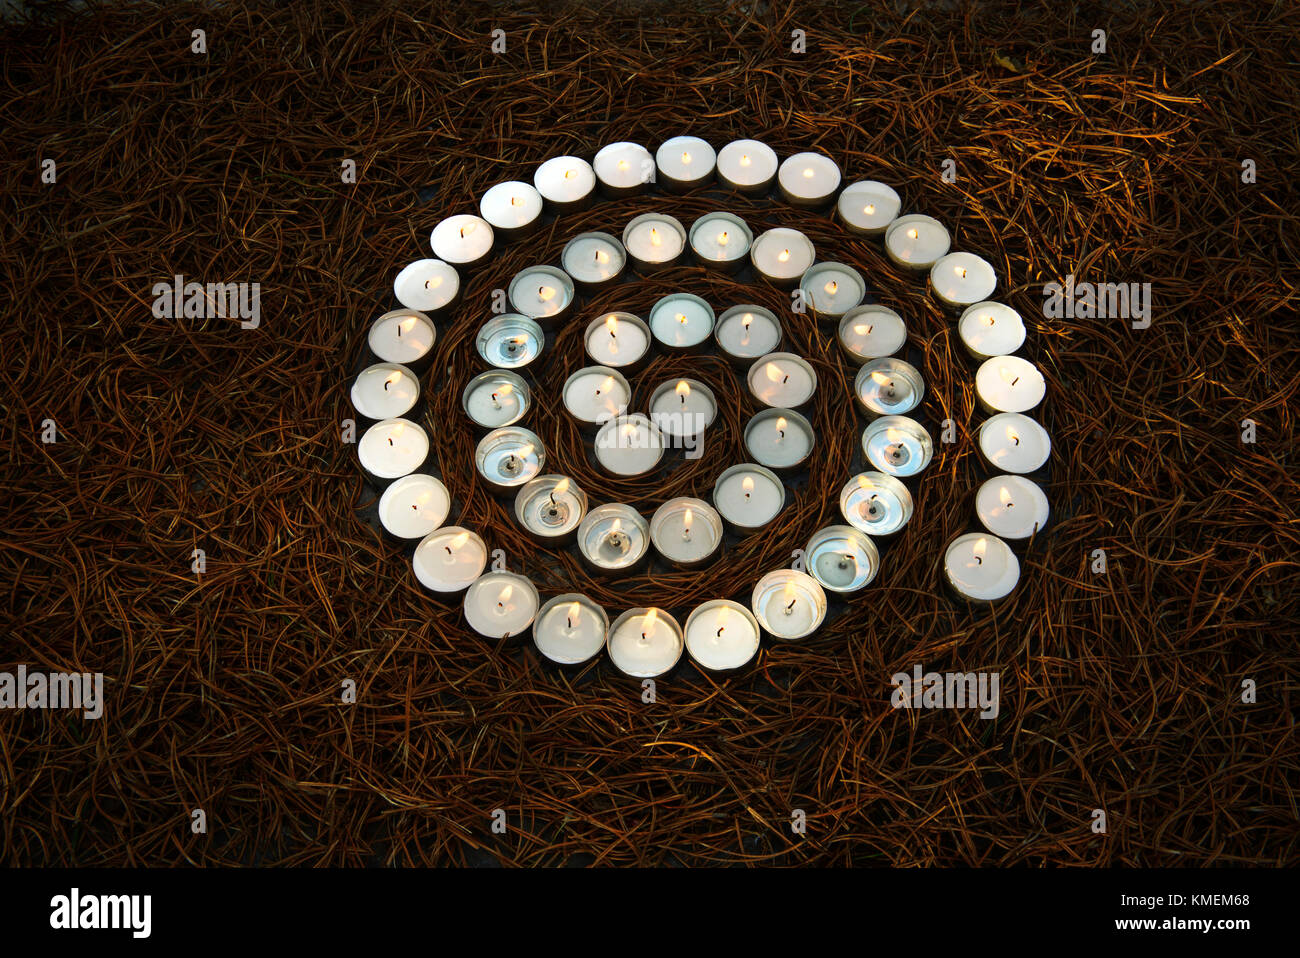 Espiral de encendido encender velas de té de agujas de pino secas Foto de stock